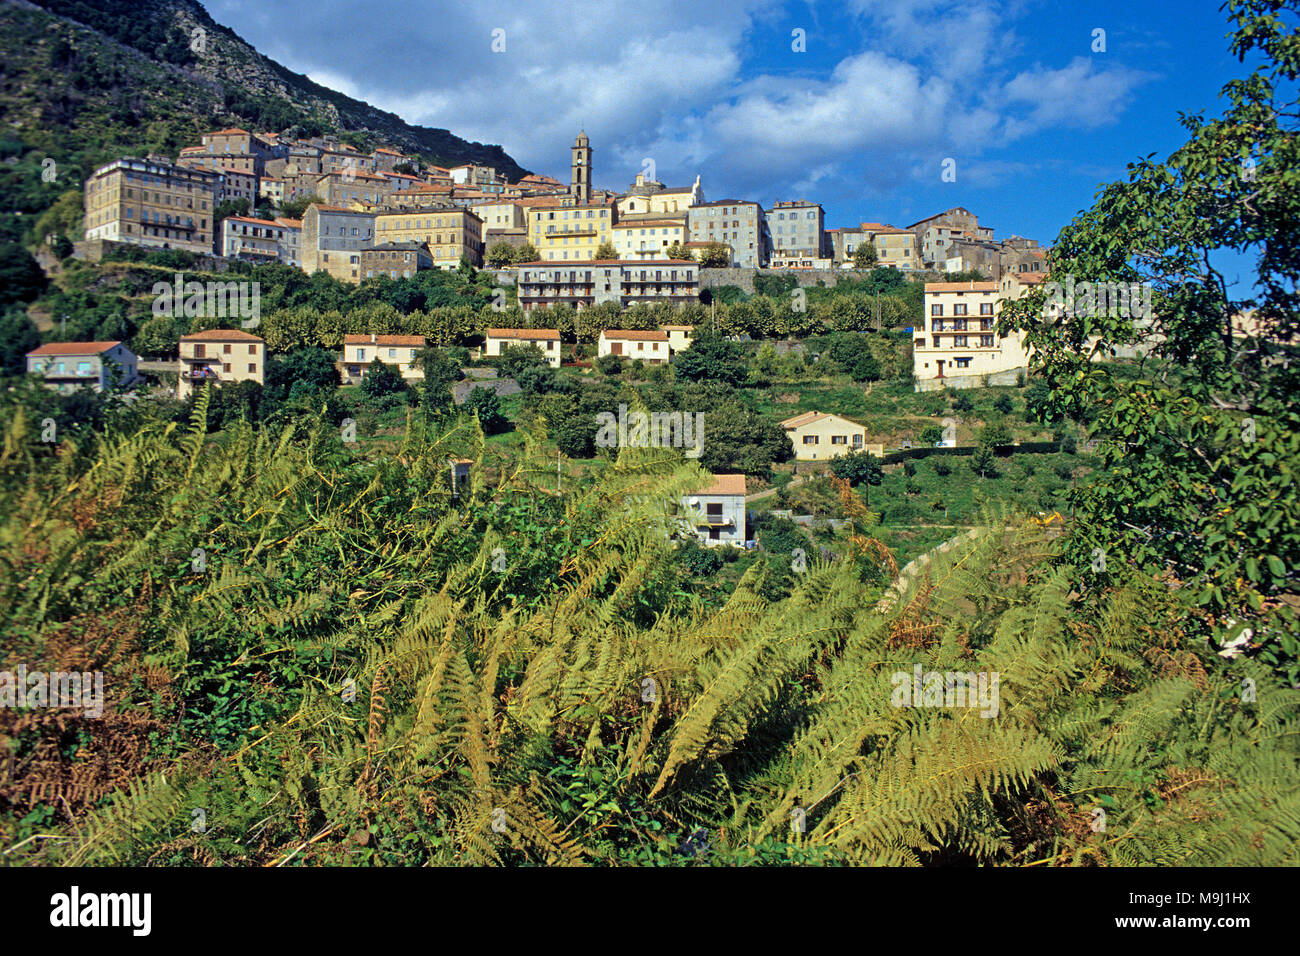 La pintoresca aldea de montaña Cervione, Córcega, Francia, el mar Mediterráneo, Europa Foto de stock